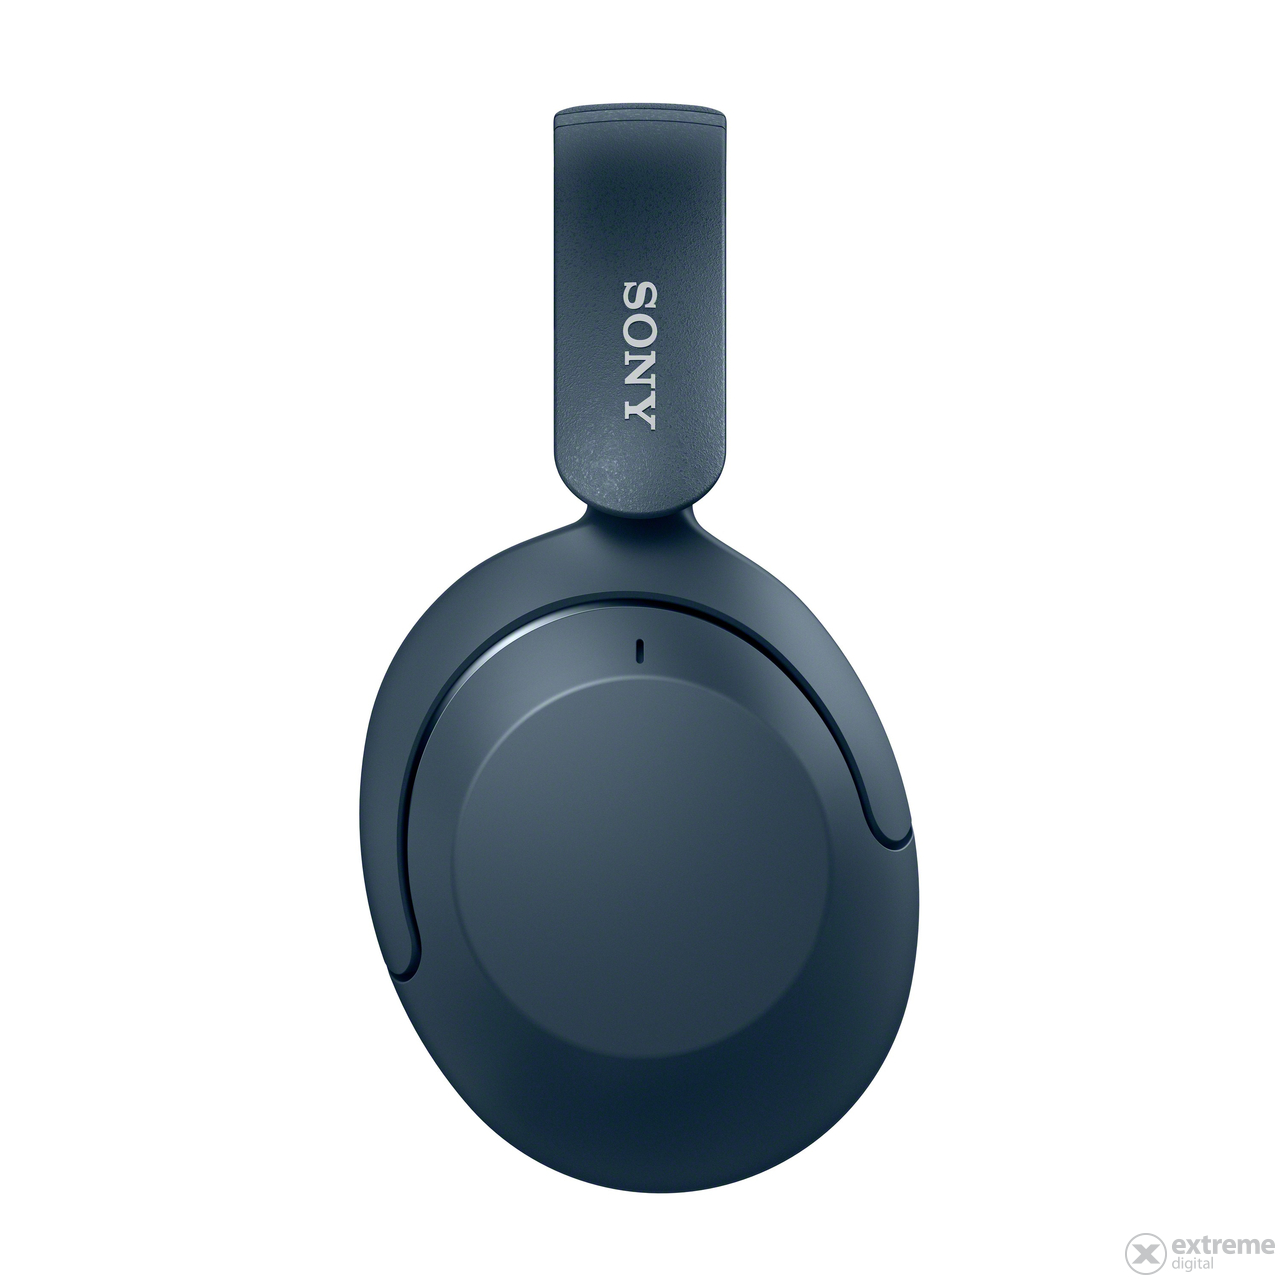 Sony WHXB910N Extra Bass ANC Bluetooth slúchadlá, modré